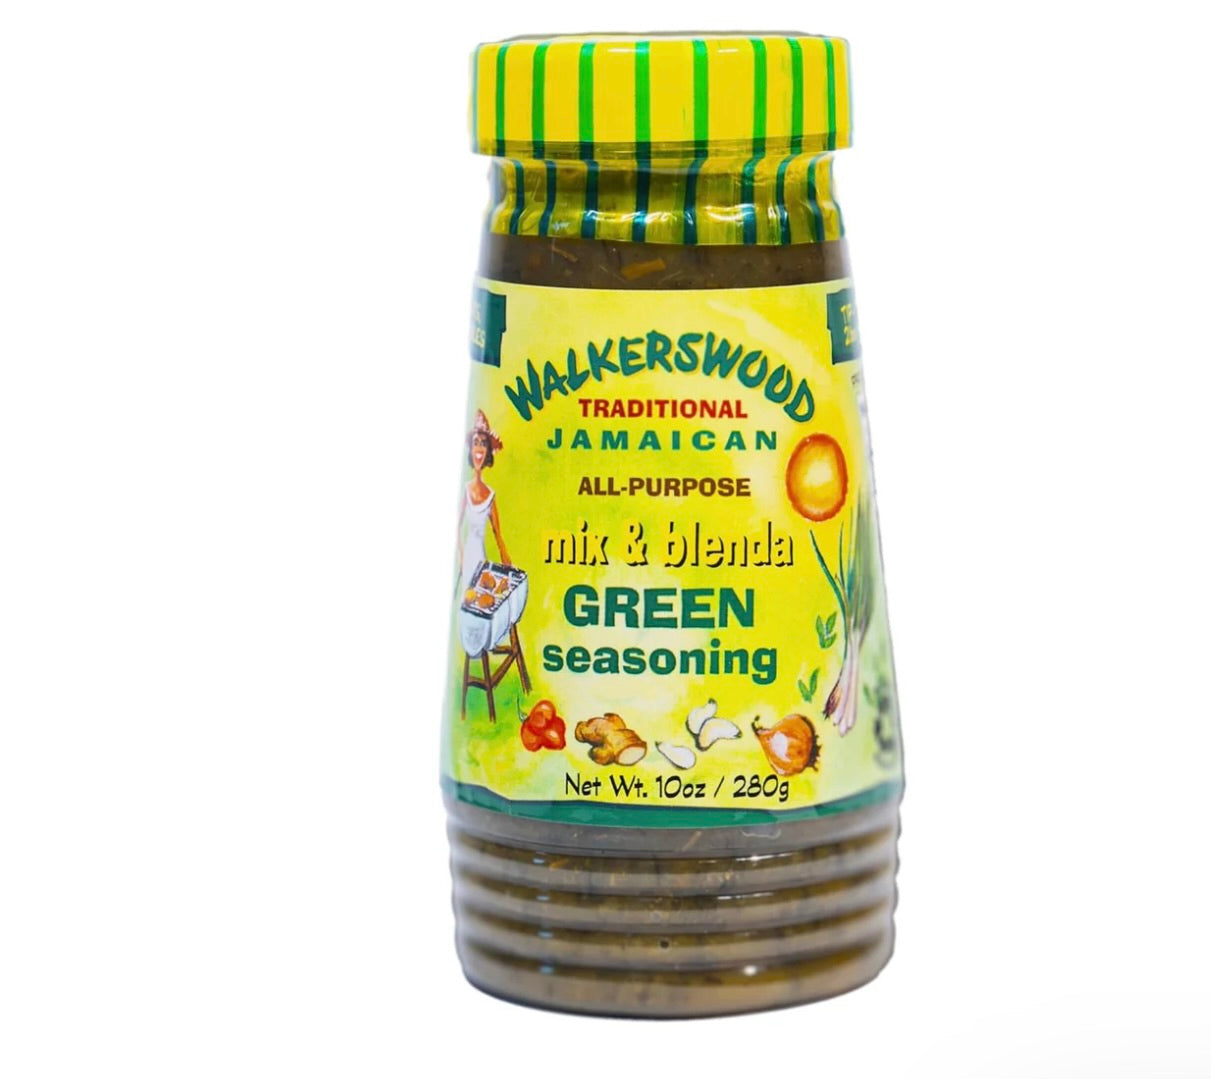 Walkerswood seasoning